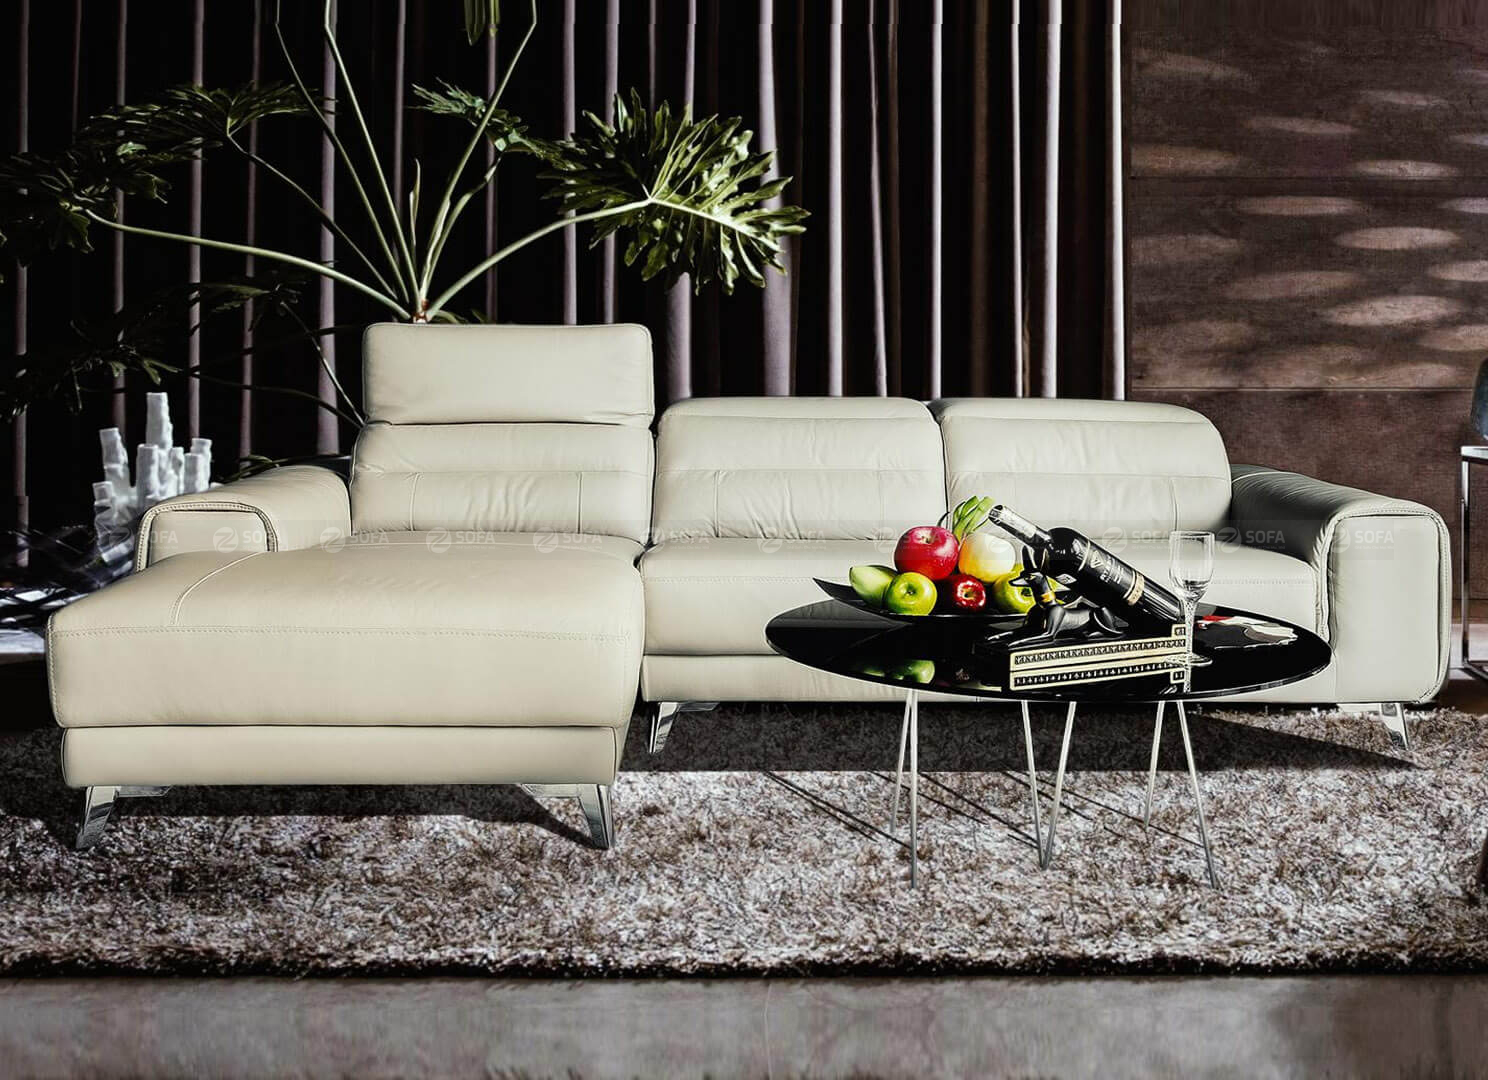 Tìm cách chọn màu ghế sofa cho mùa xuân phù hợp nhất